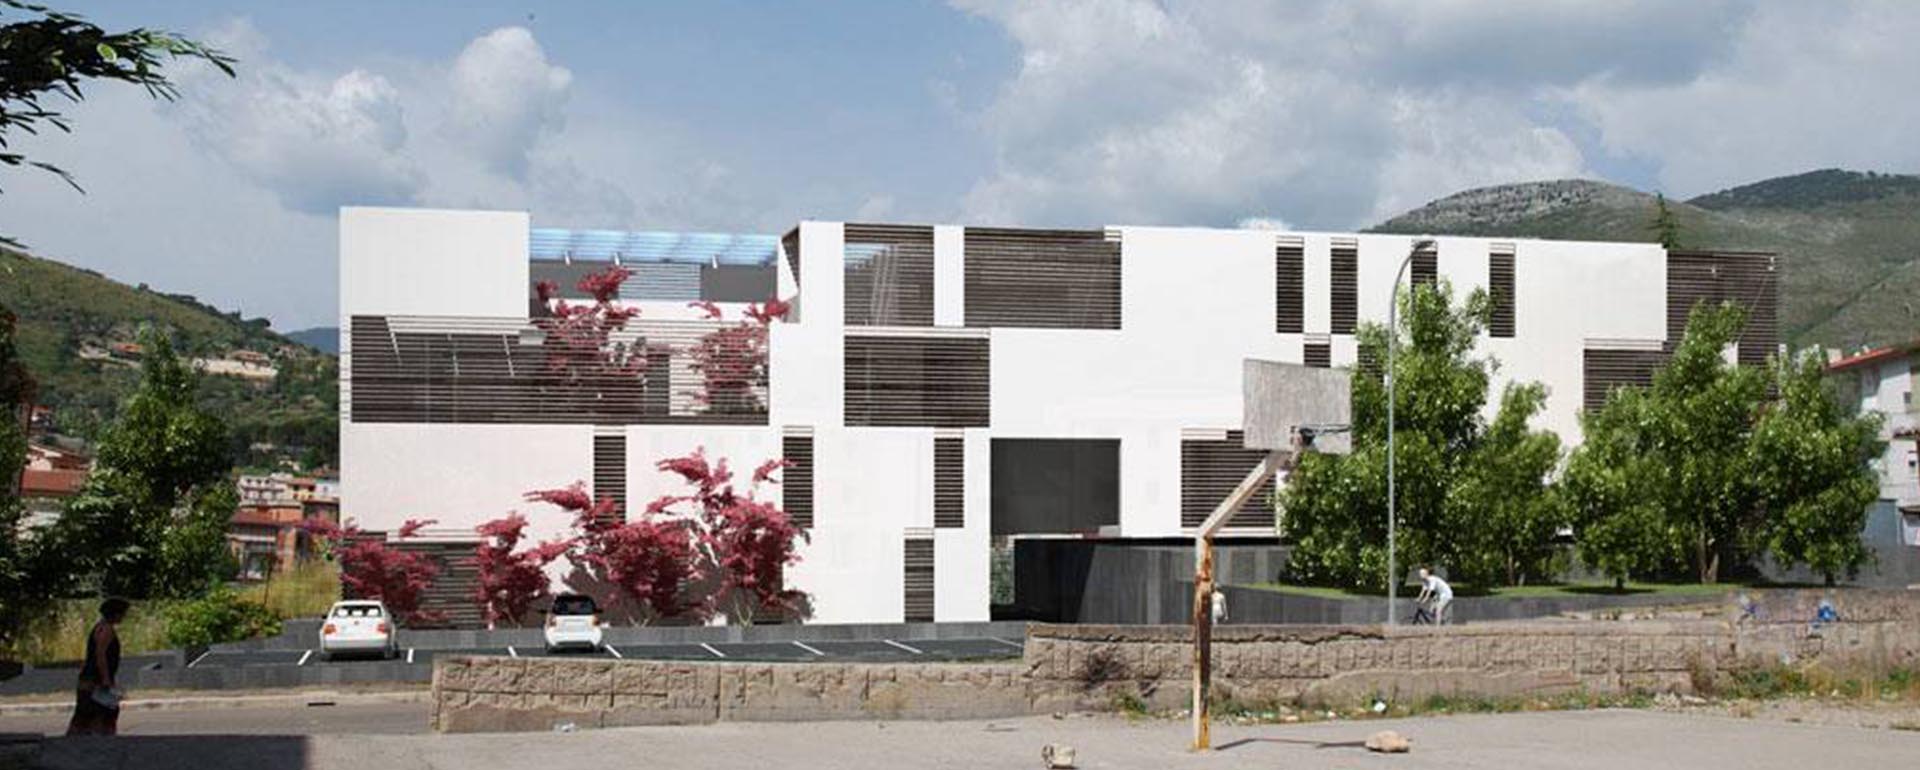 studio_architetto_masser_velletri_roma_progetti_residenziale_itri_1